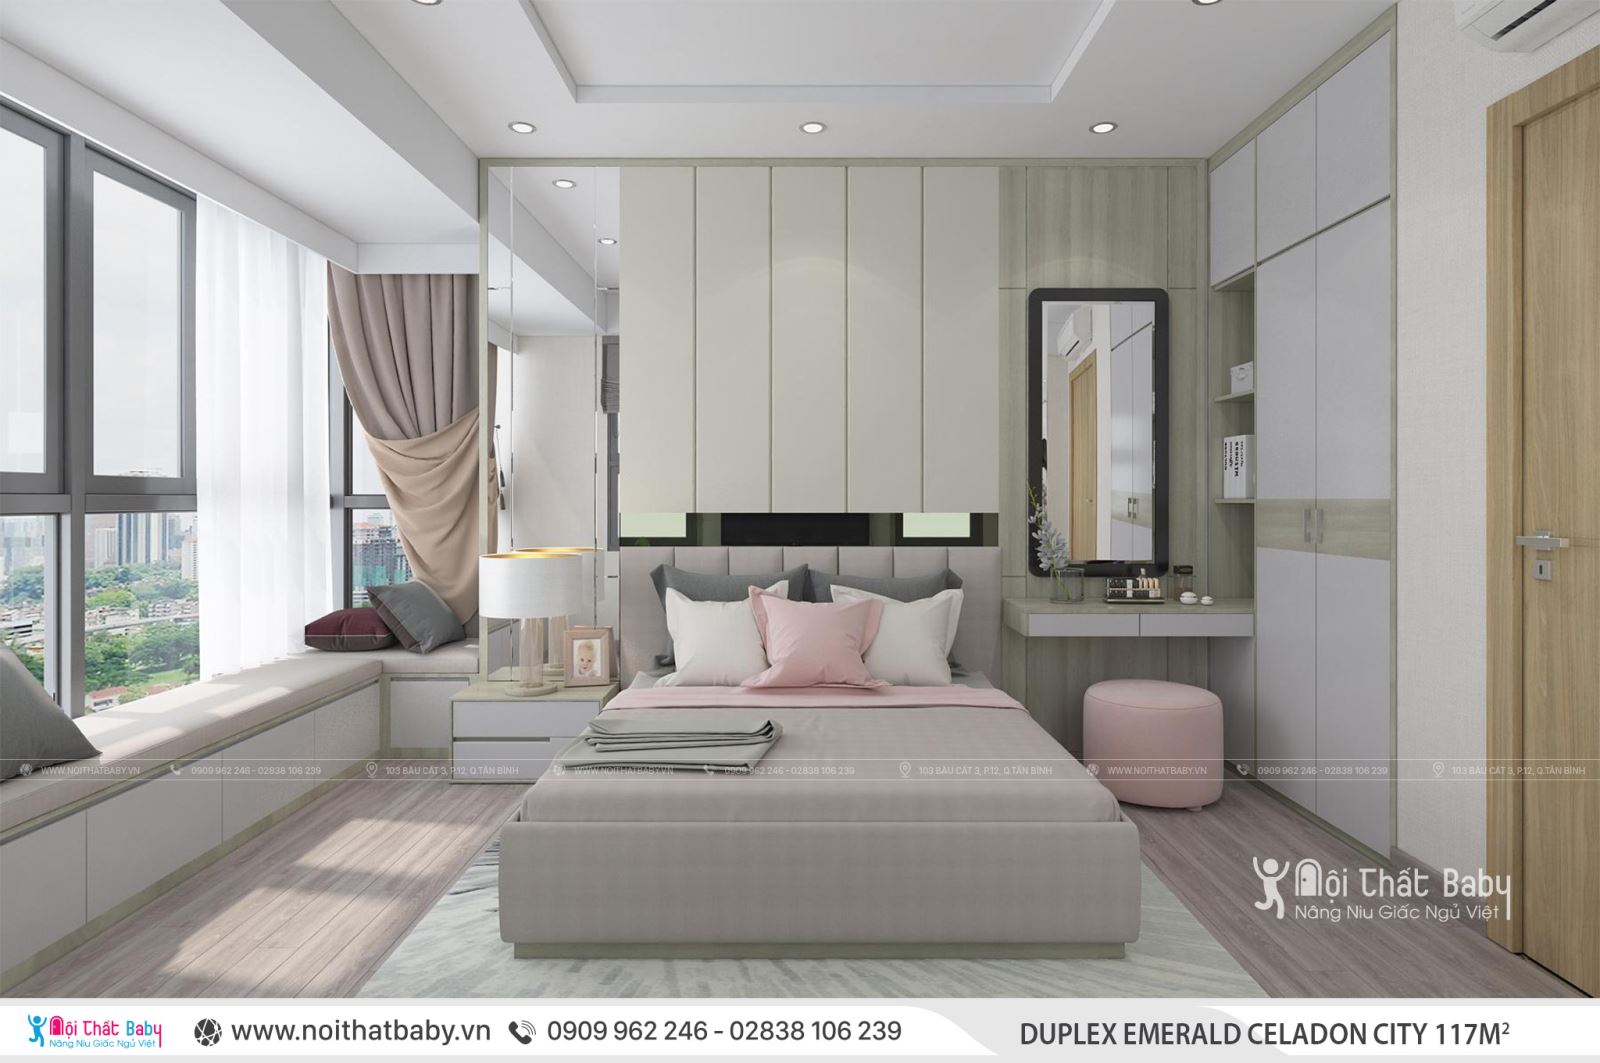 Tổng hợp các mẫu thiết kế nội thất Chung cư Emerald Celadon City